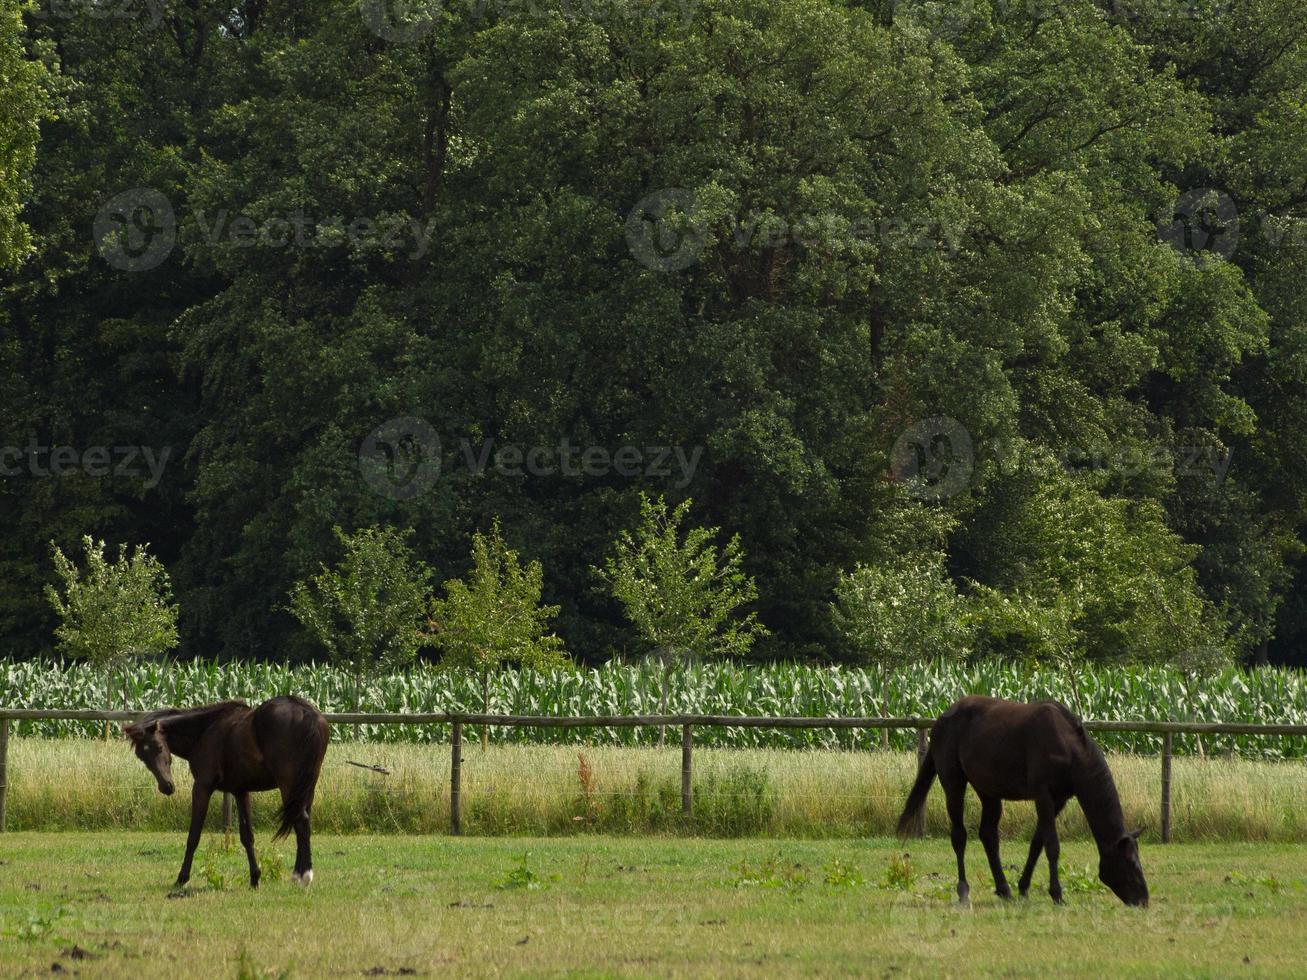 Pferde auf einer Wiese im deutschen Münsterland foto